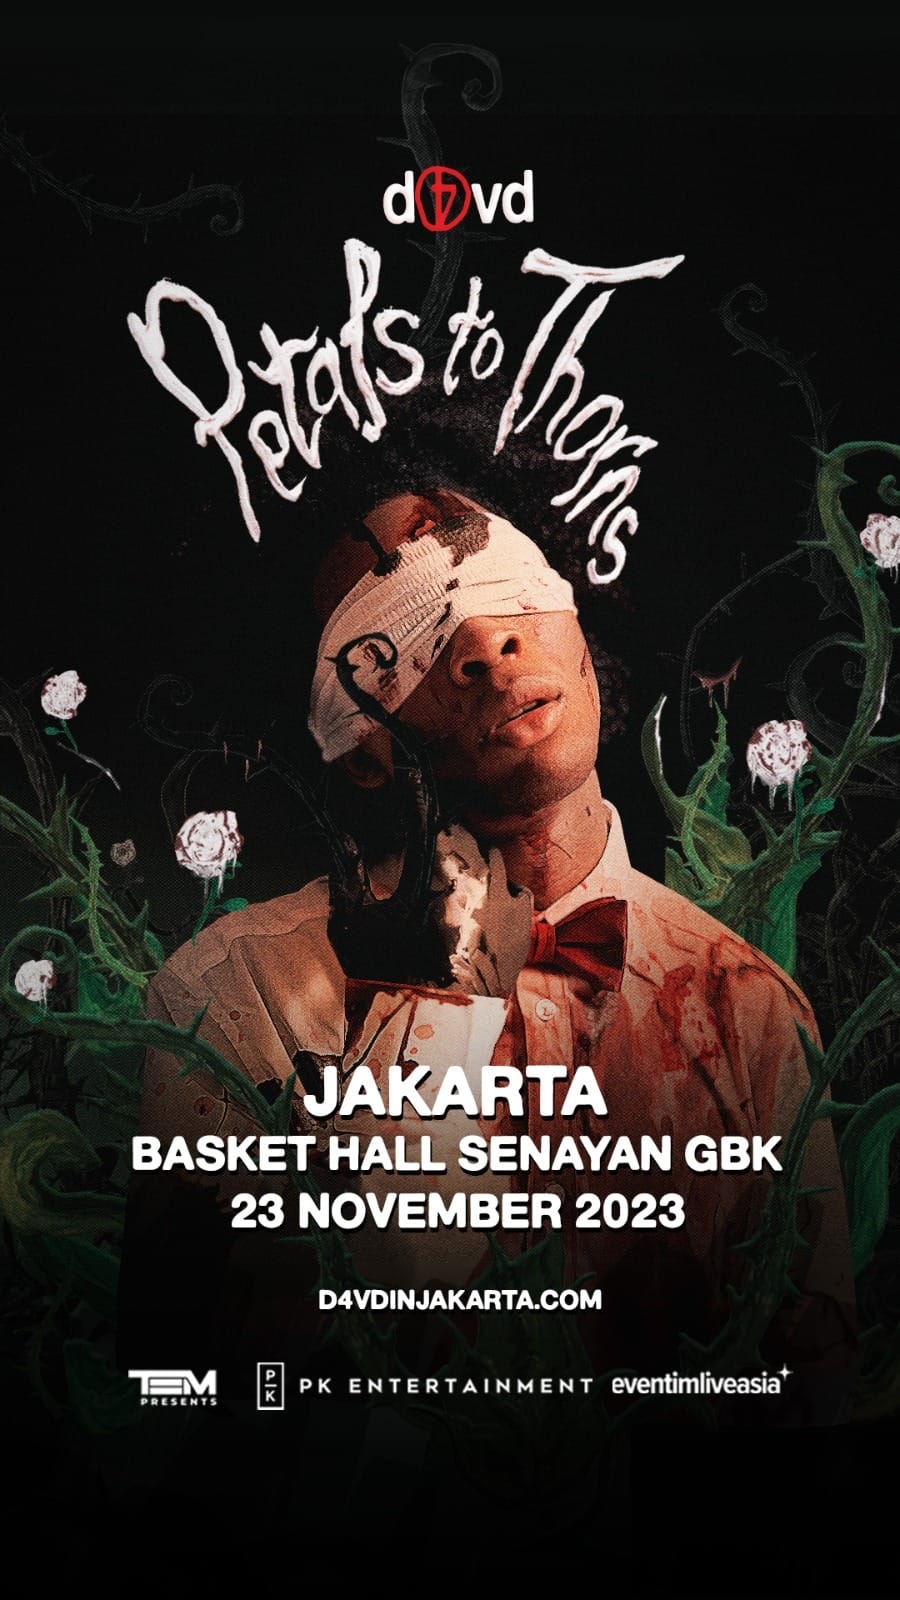  D4vd-Petals To Thorns Tour Hadir di Jakarta November Ini